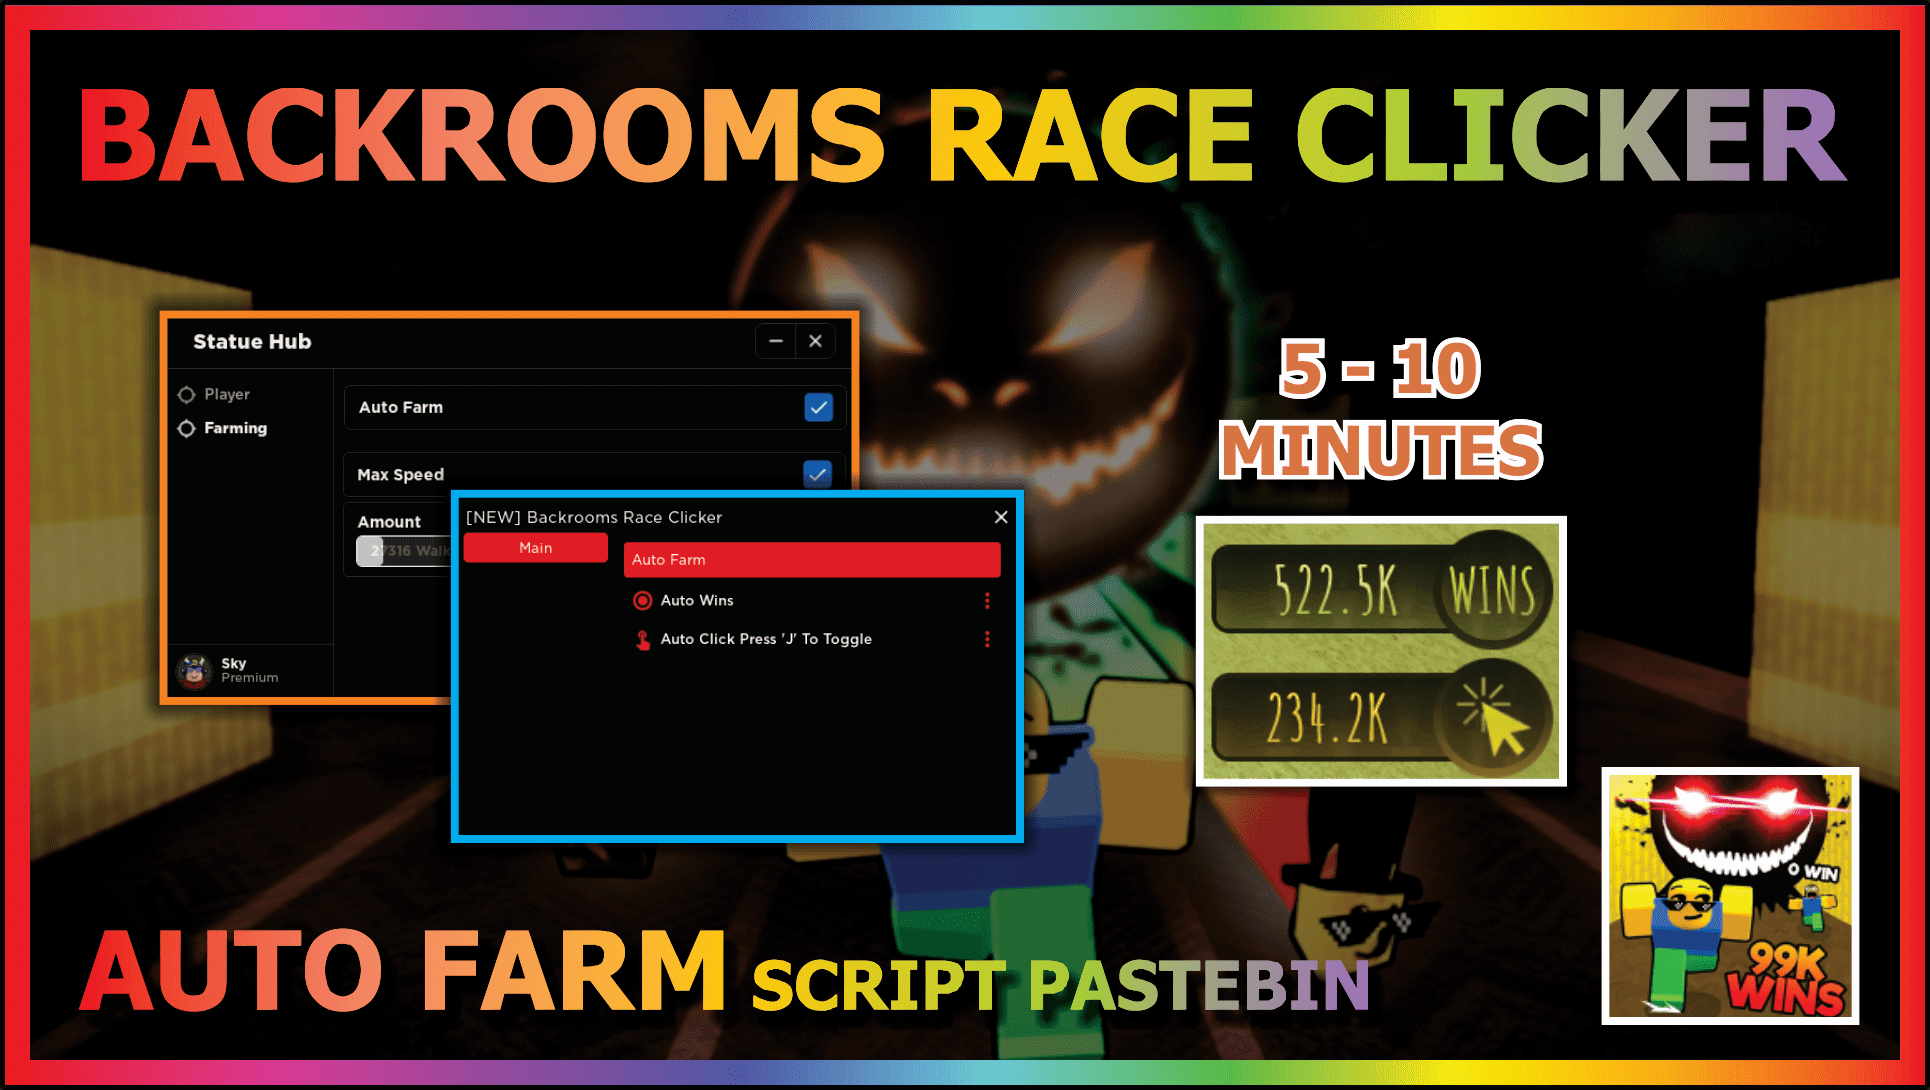 Tổng hợp code Backrooms Race Clicker và cách nhập 